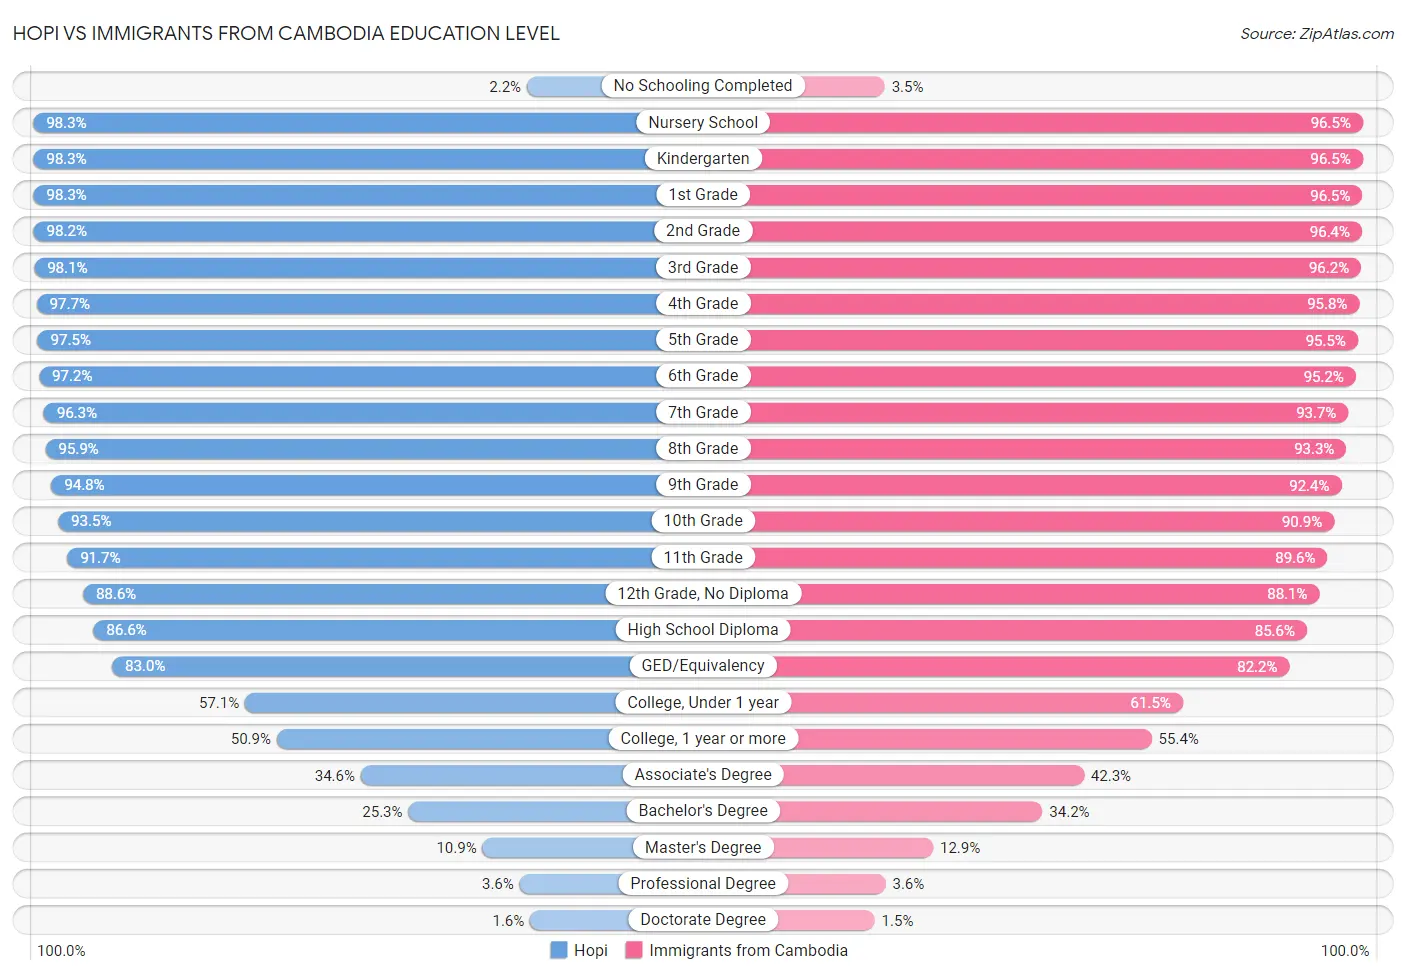 Hopi vs Immigrants from Cambodia Education Level